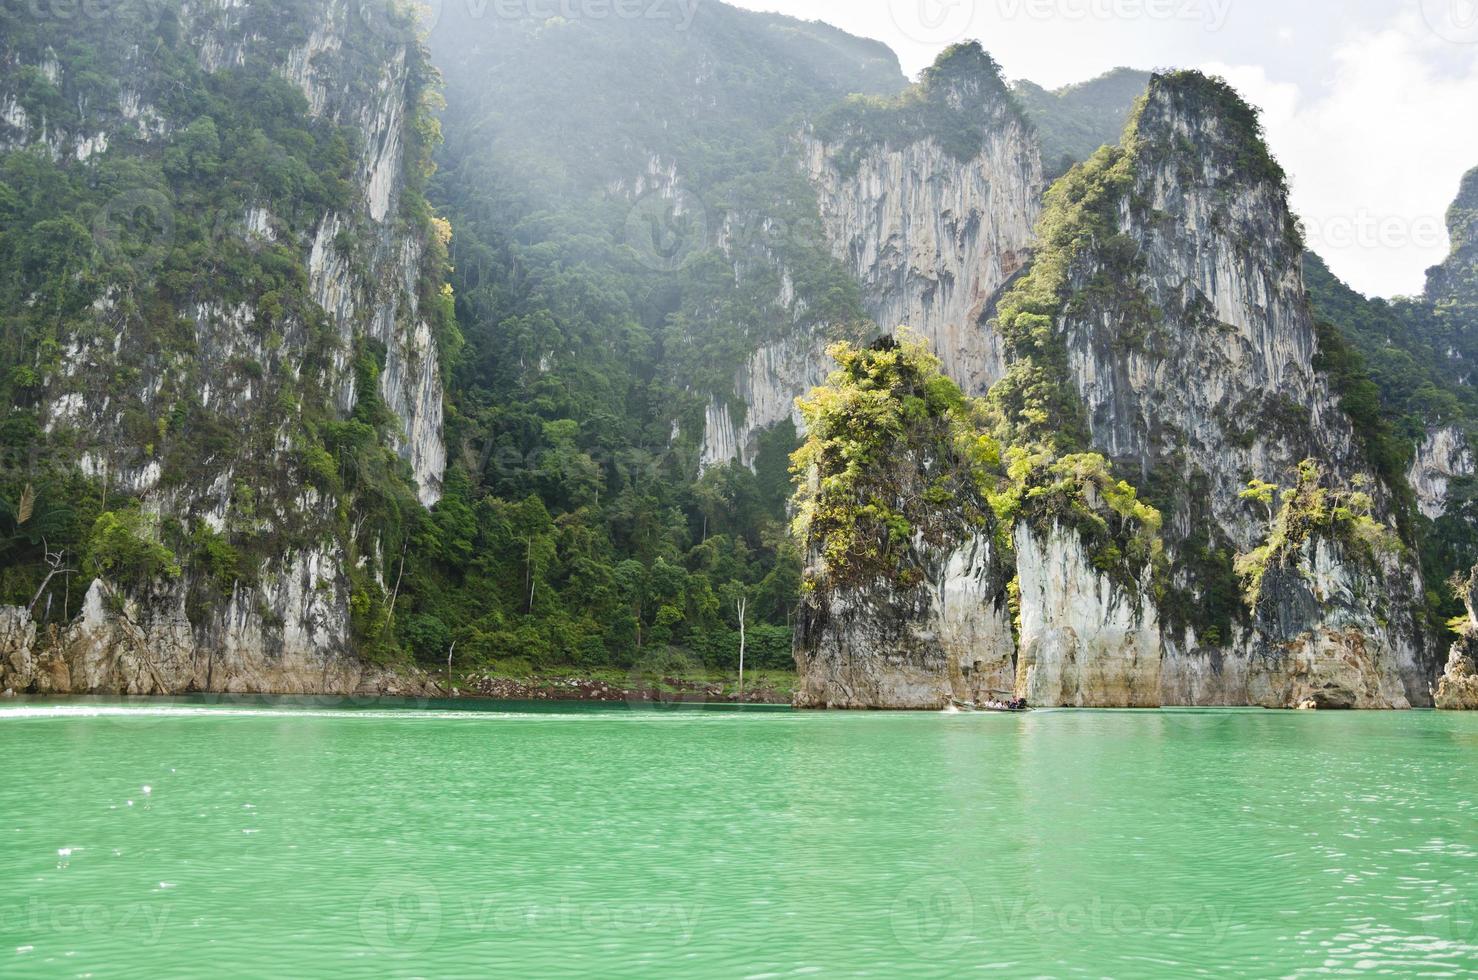 belle alte montagne e fiume verde (guilin della Tailandia). foto